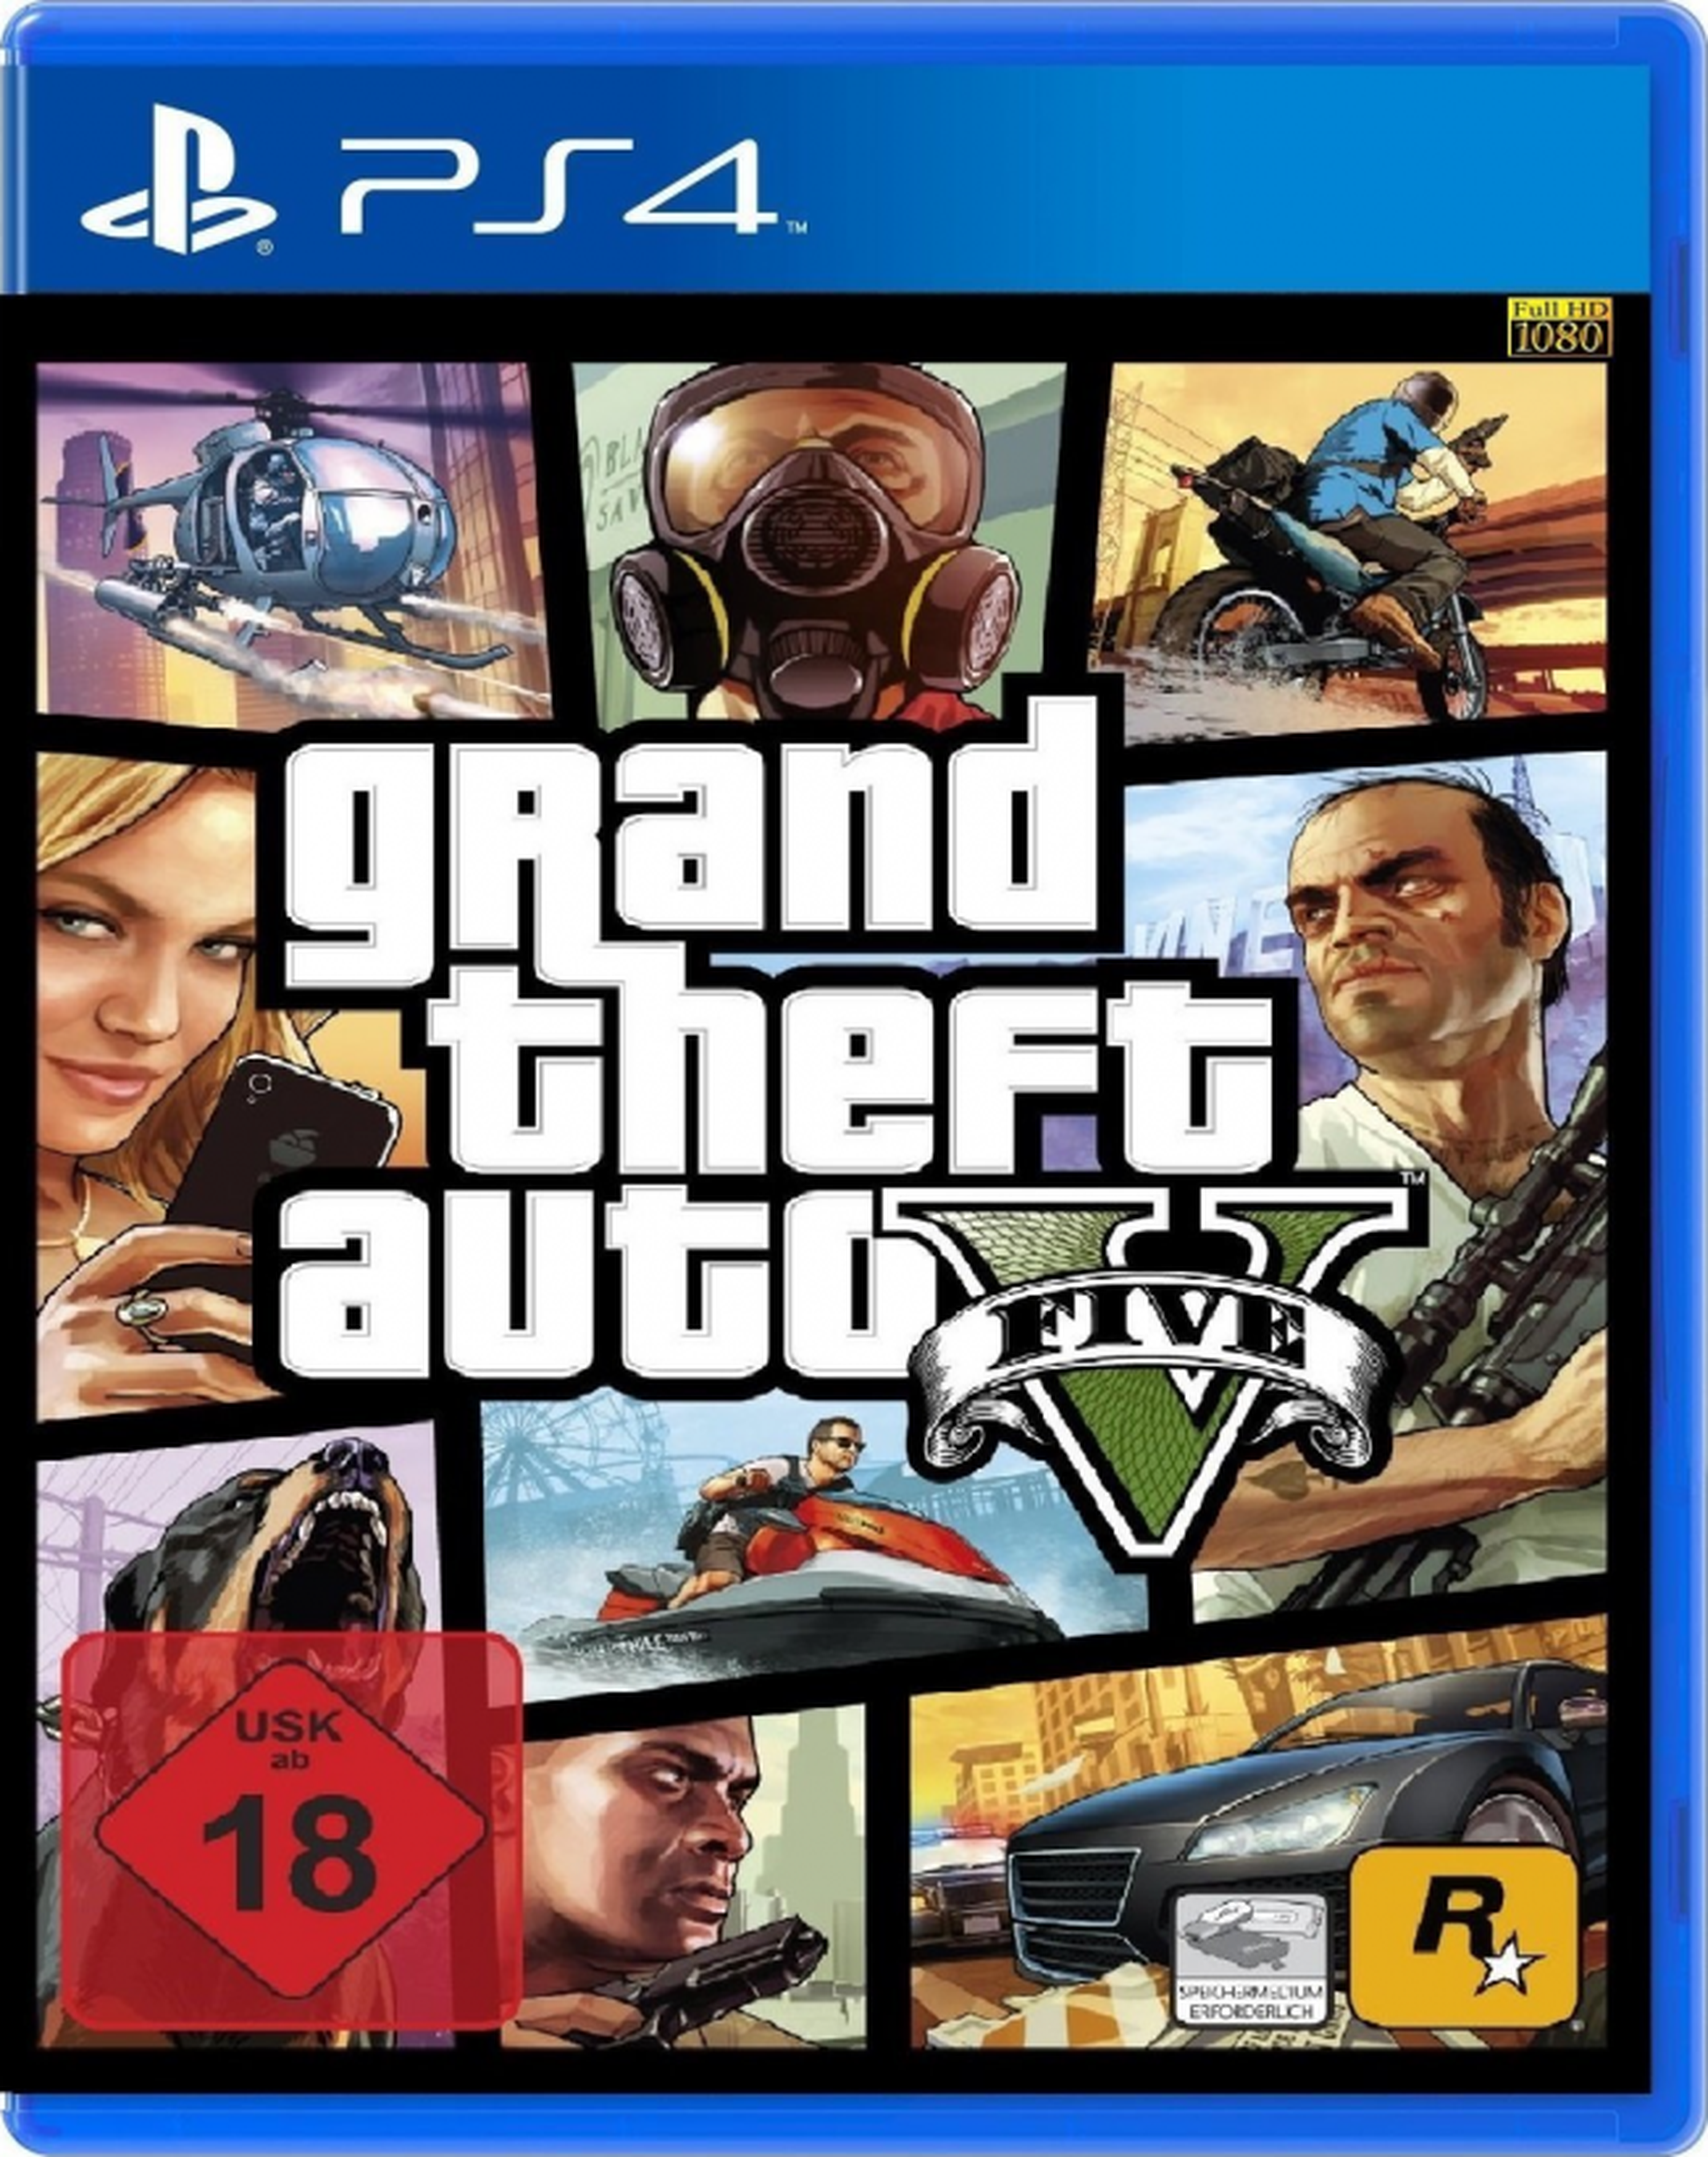 GTA V camino de PlayStation 4 y PC, según Amazon